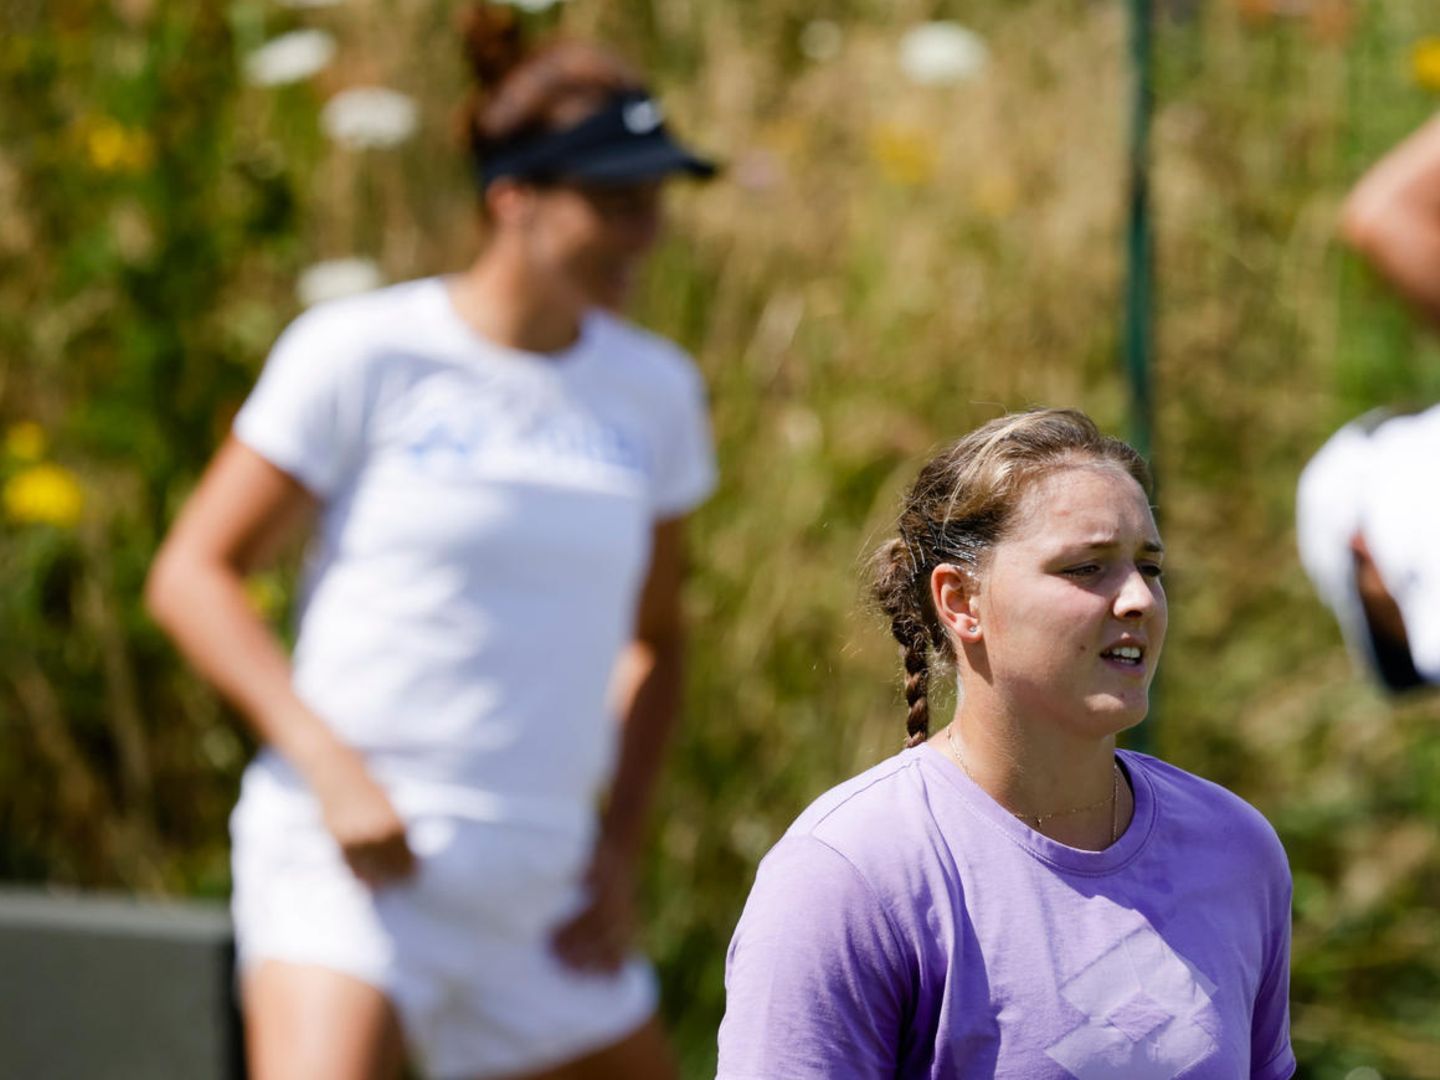 Viertelfinale in Wimbledon Jule Niemeier und Tatjana Maria schreiben Geschichte STERN.de